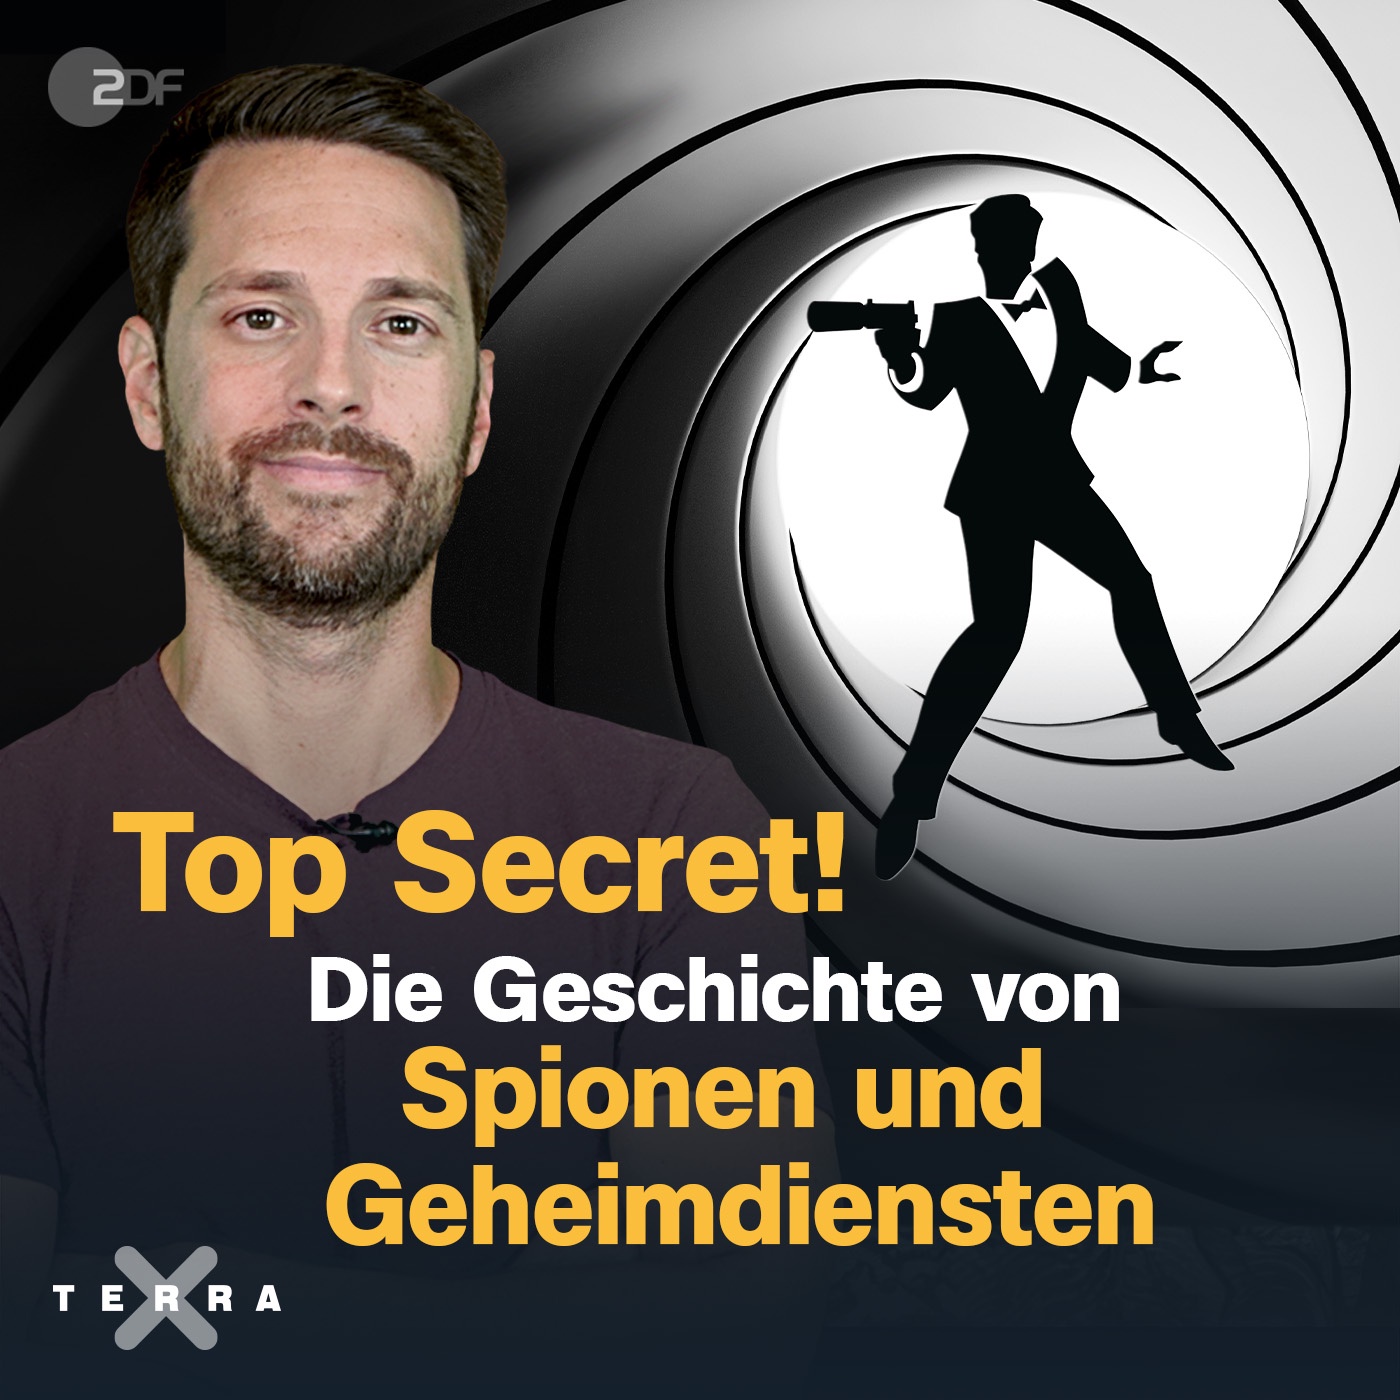 Top Secret! Die Geschichte von Spionen und Geheimdiensten